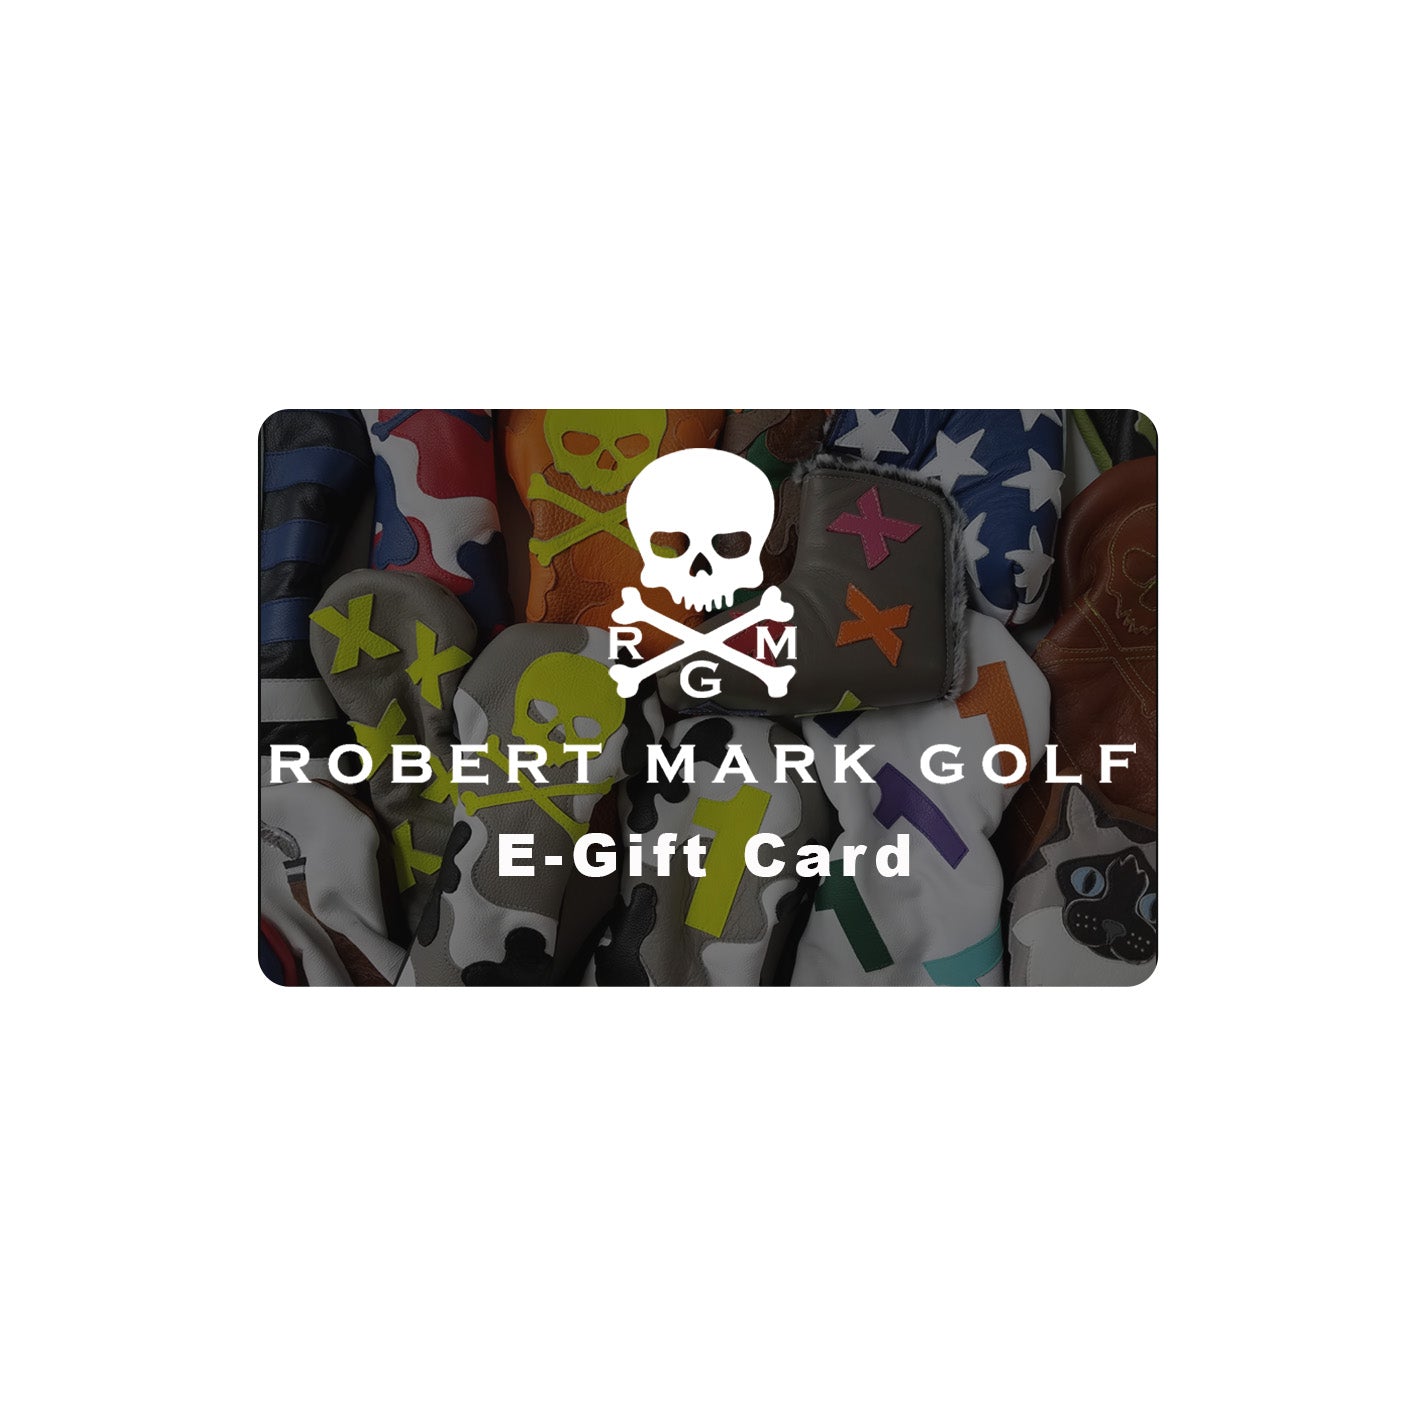 RMG E-Gift Card - Robert Mark Golf